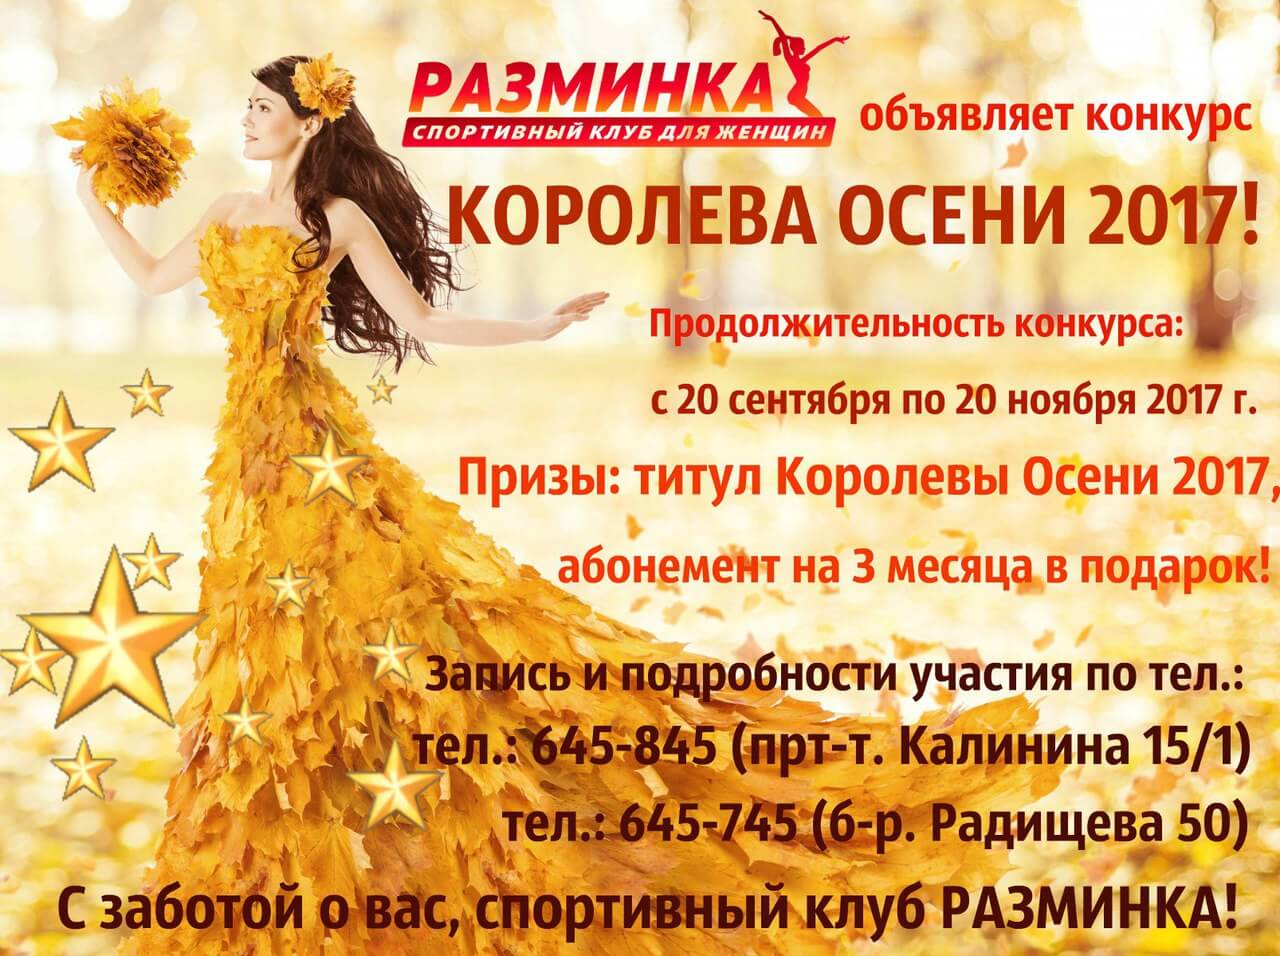 В Твери пройдет конкурс "Королева осени" среди спортивных девушек